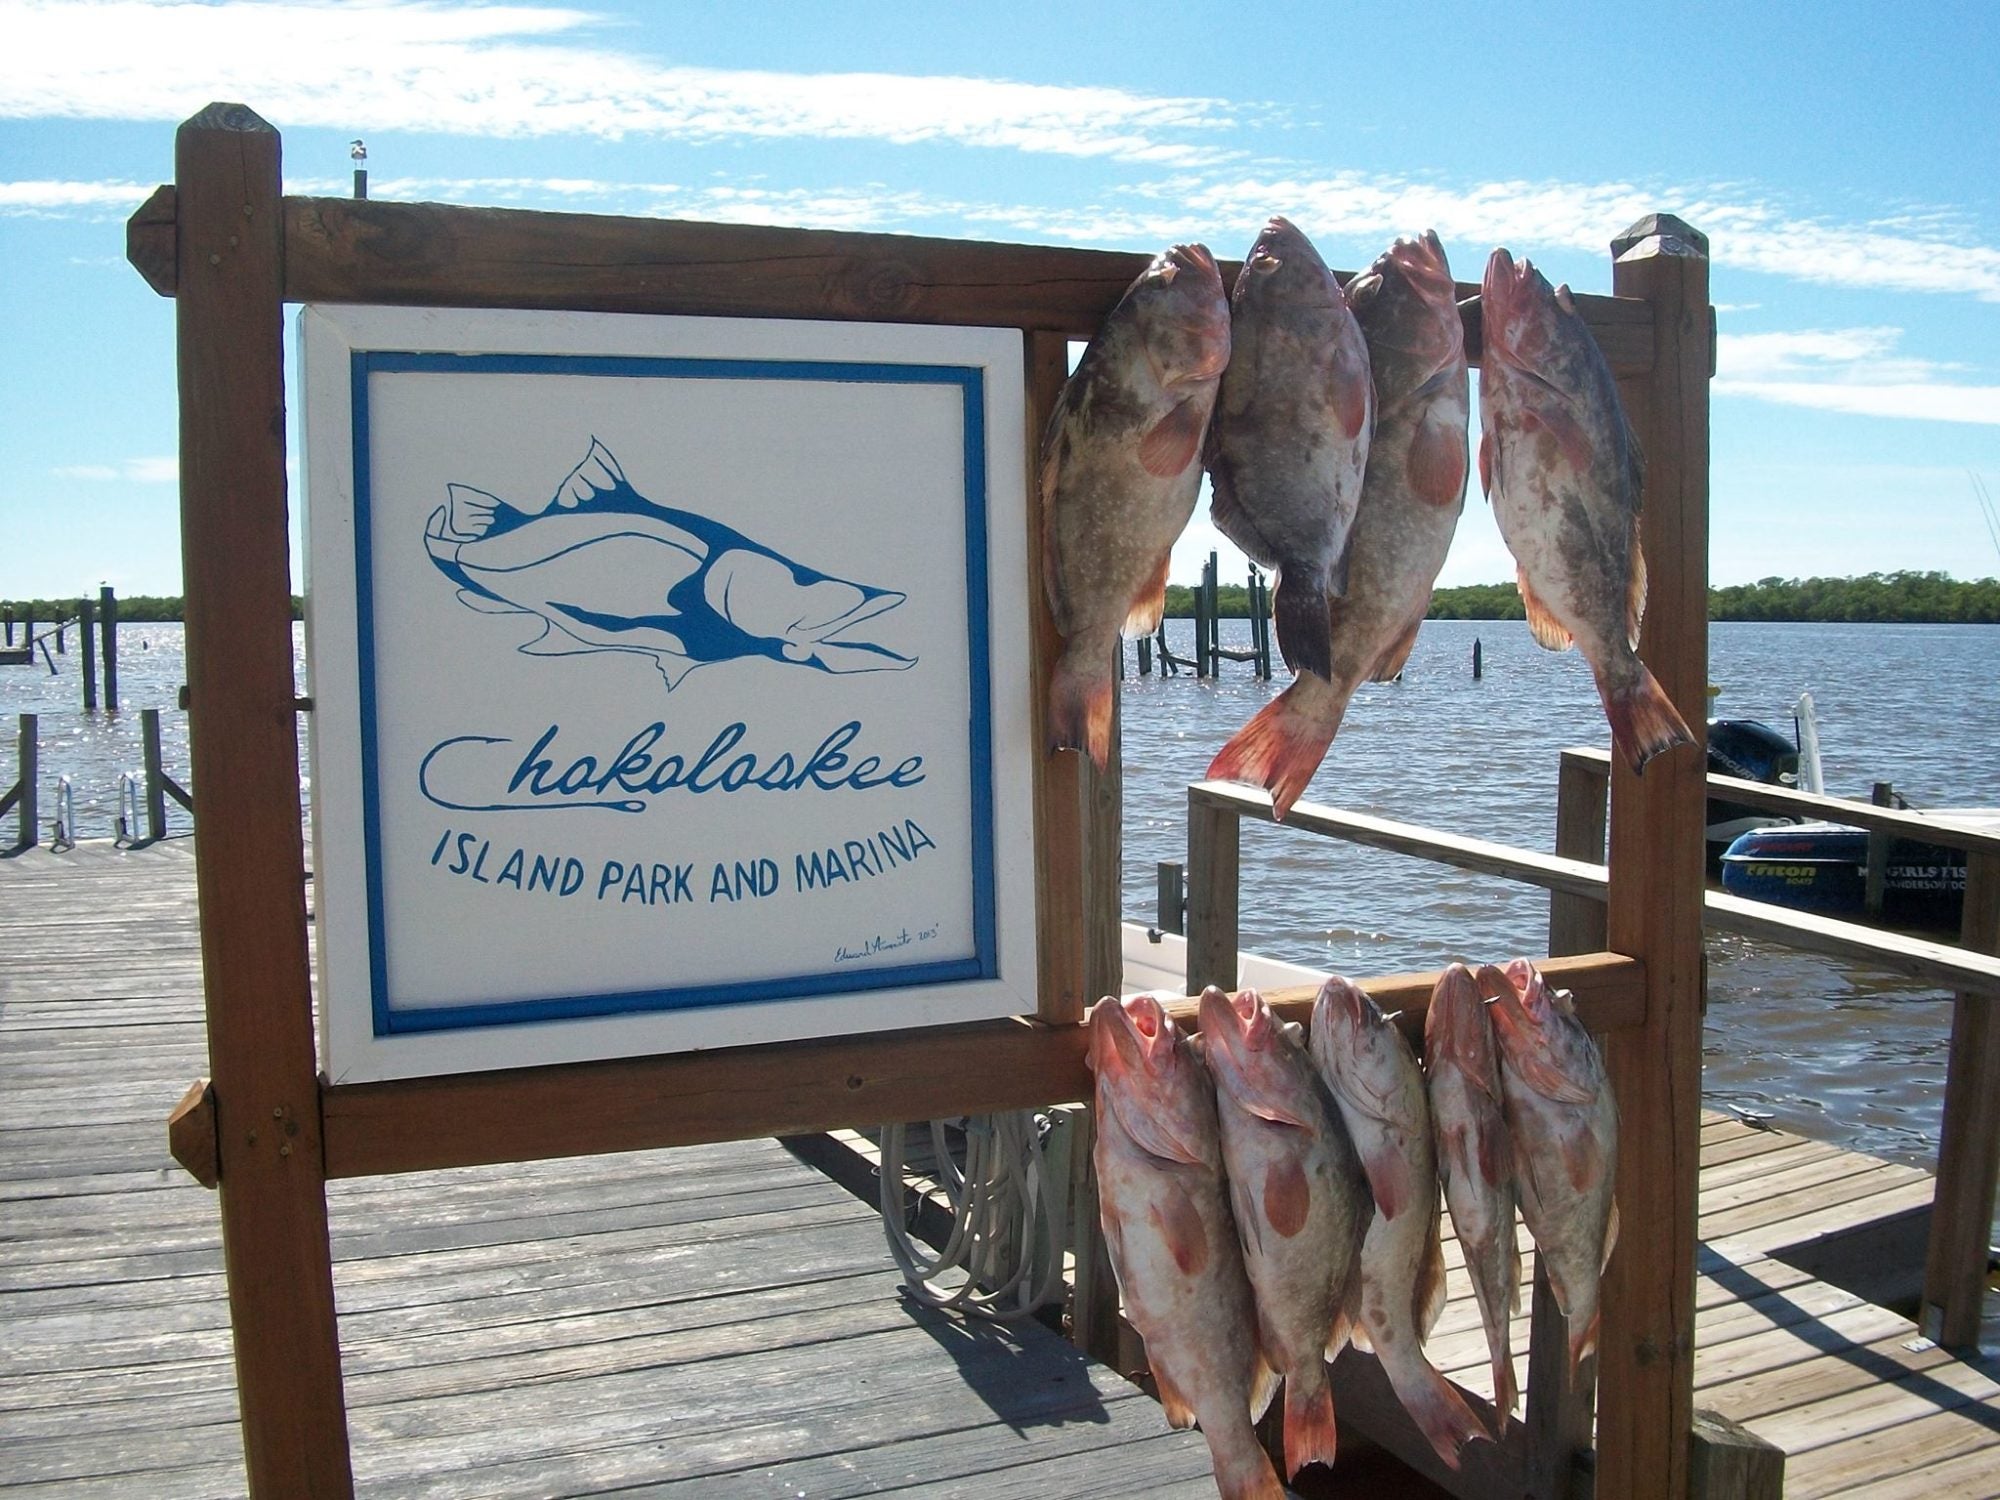 fish fish and more fish at Chokoloskee Island Resort